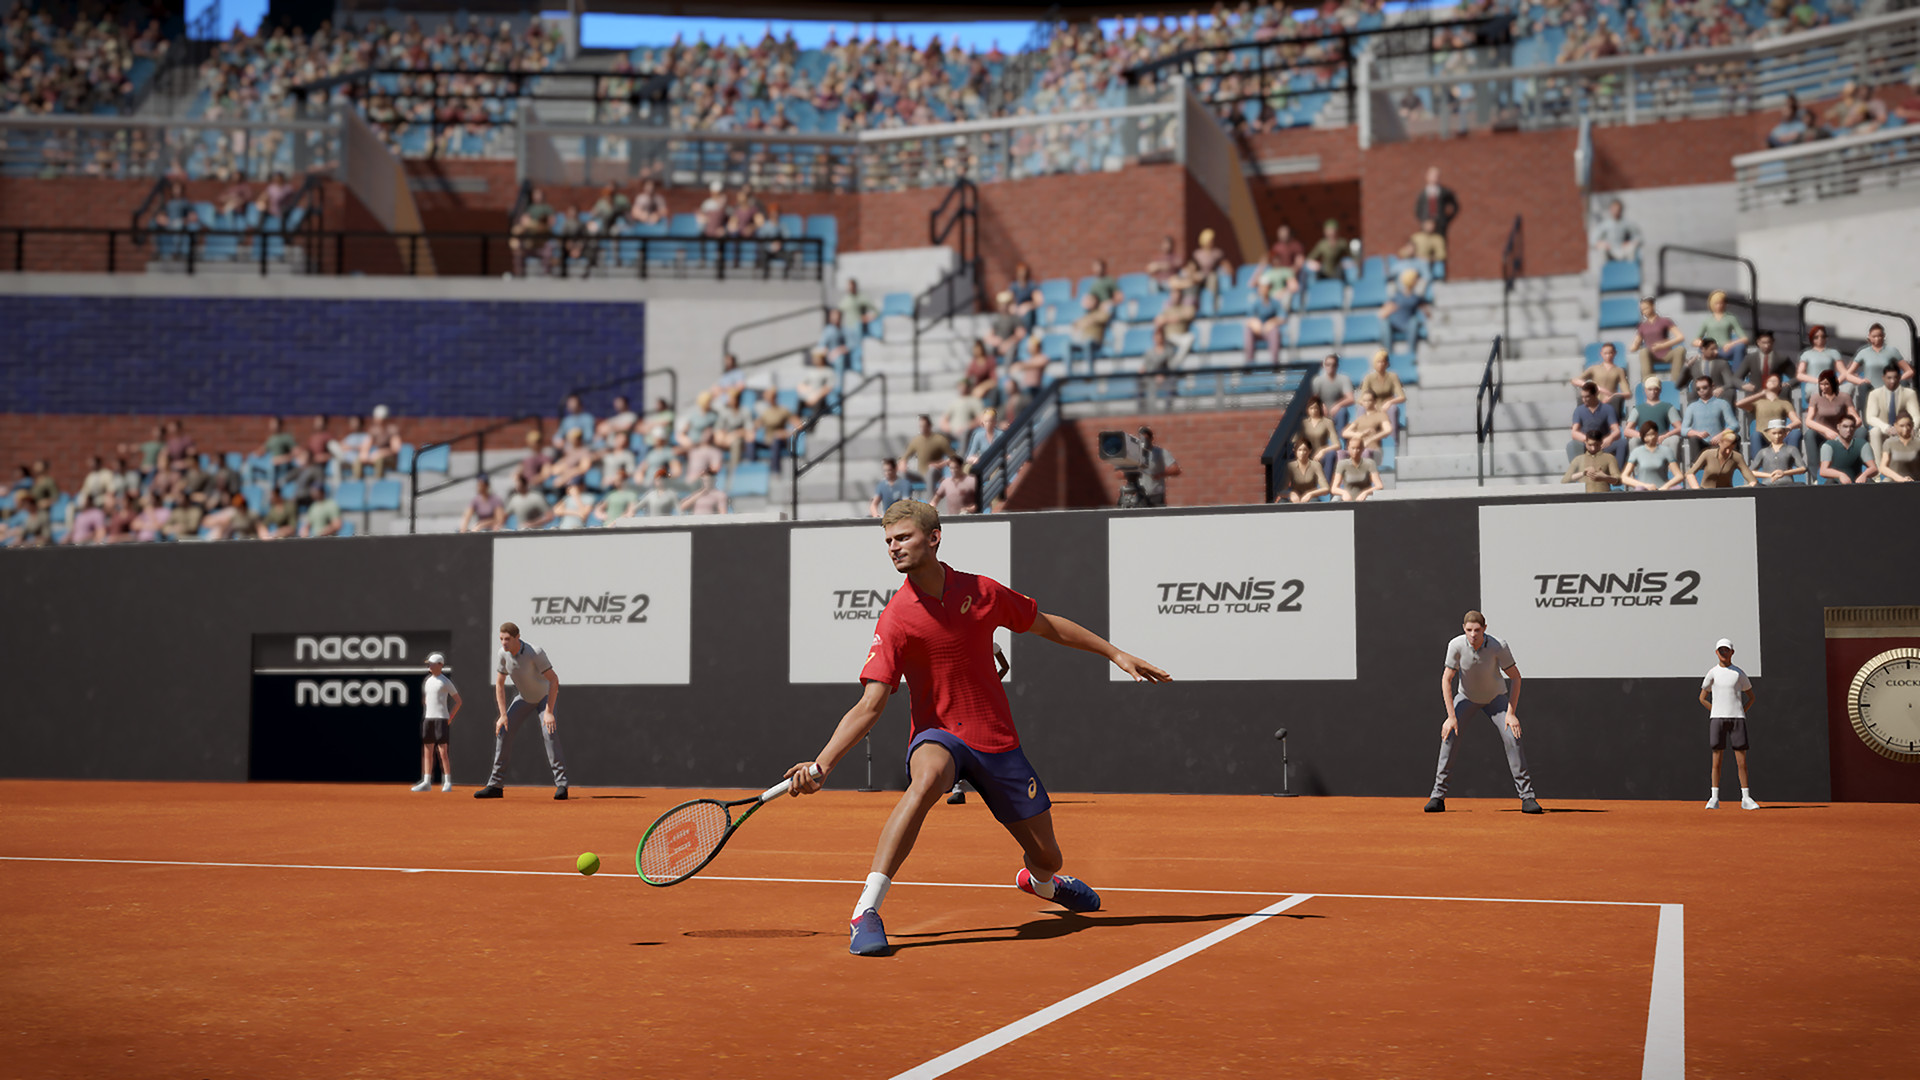 Tennis World Tour 2 - screenshot 1